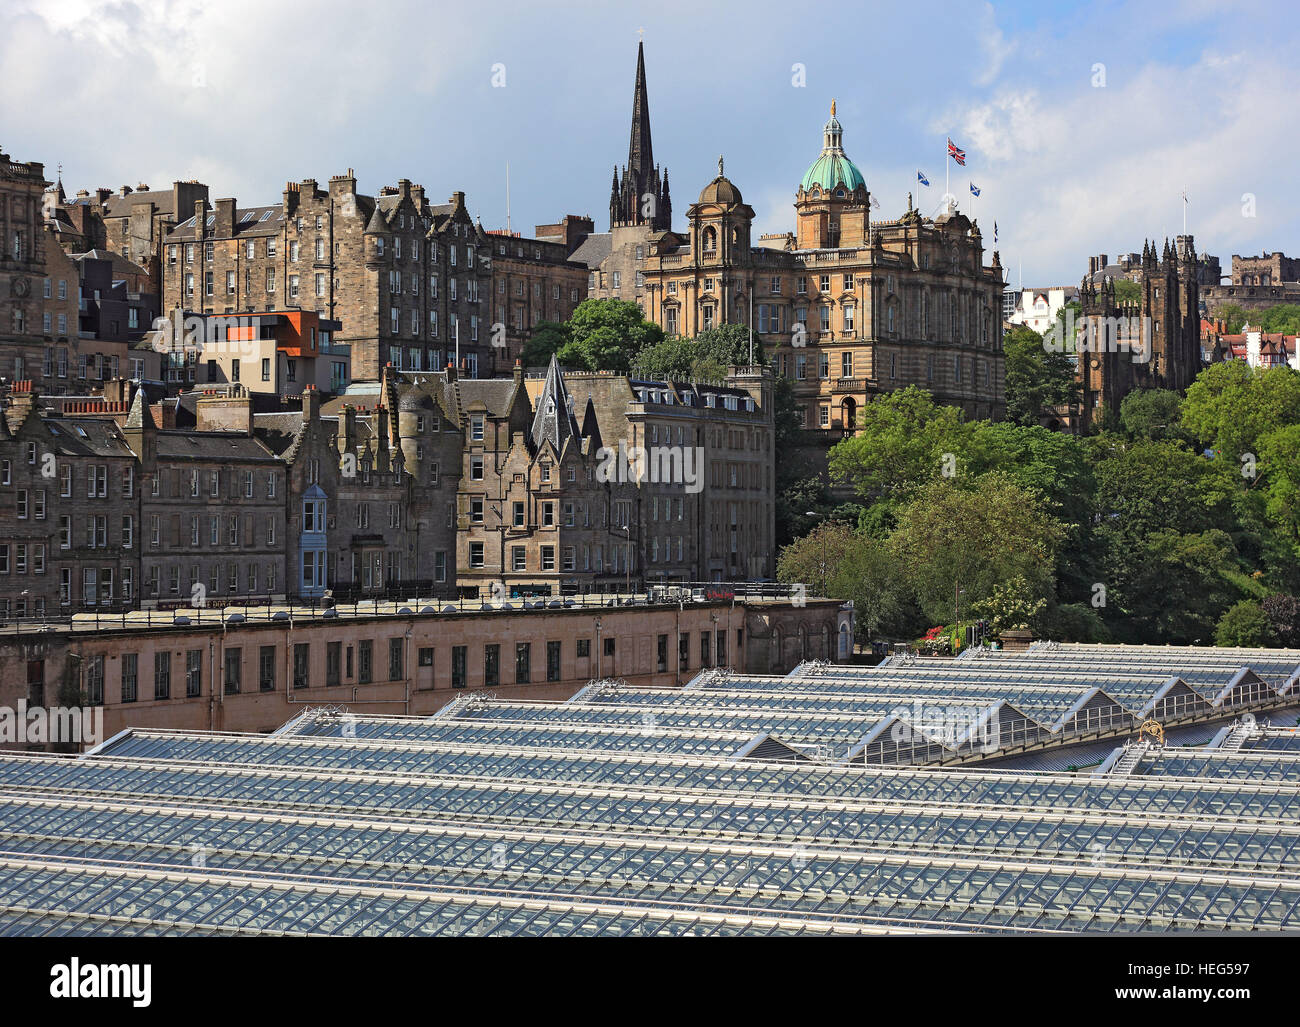 Schottland, Edinburgh, Blick auf die Altstadt und die Burg, davor der Waverly Station, Hauptbahnhof Stock Photo